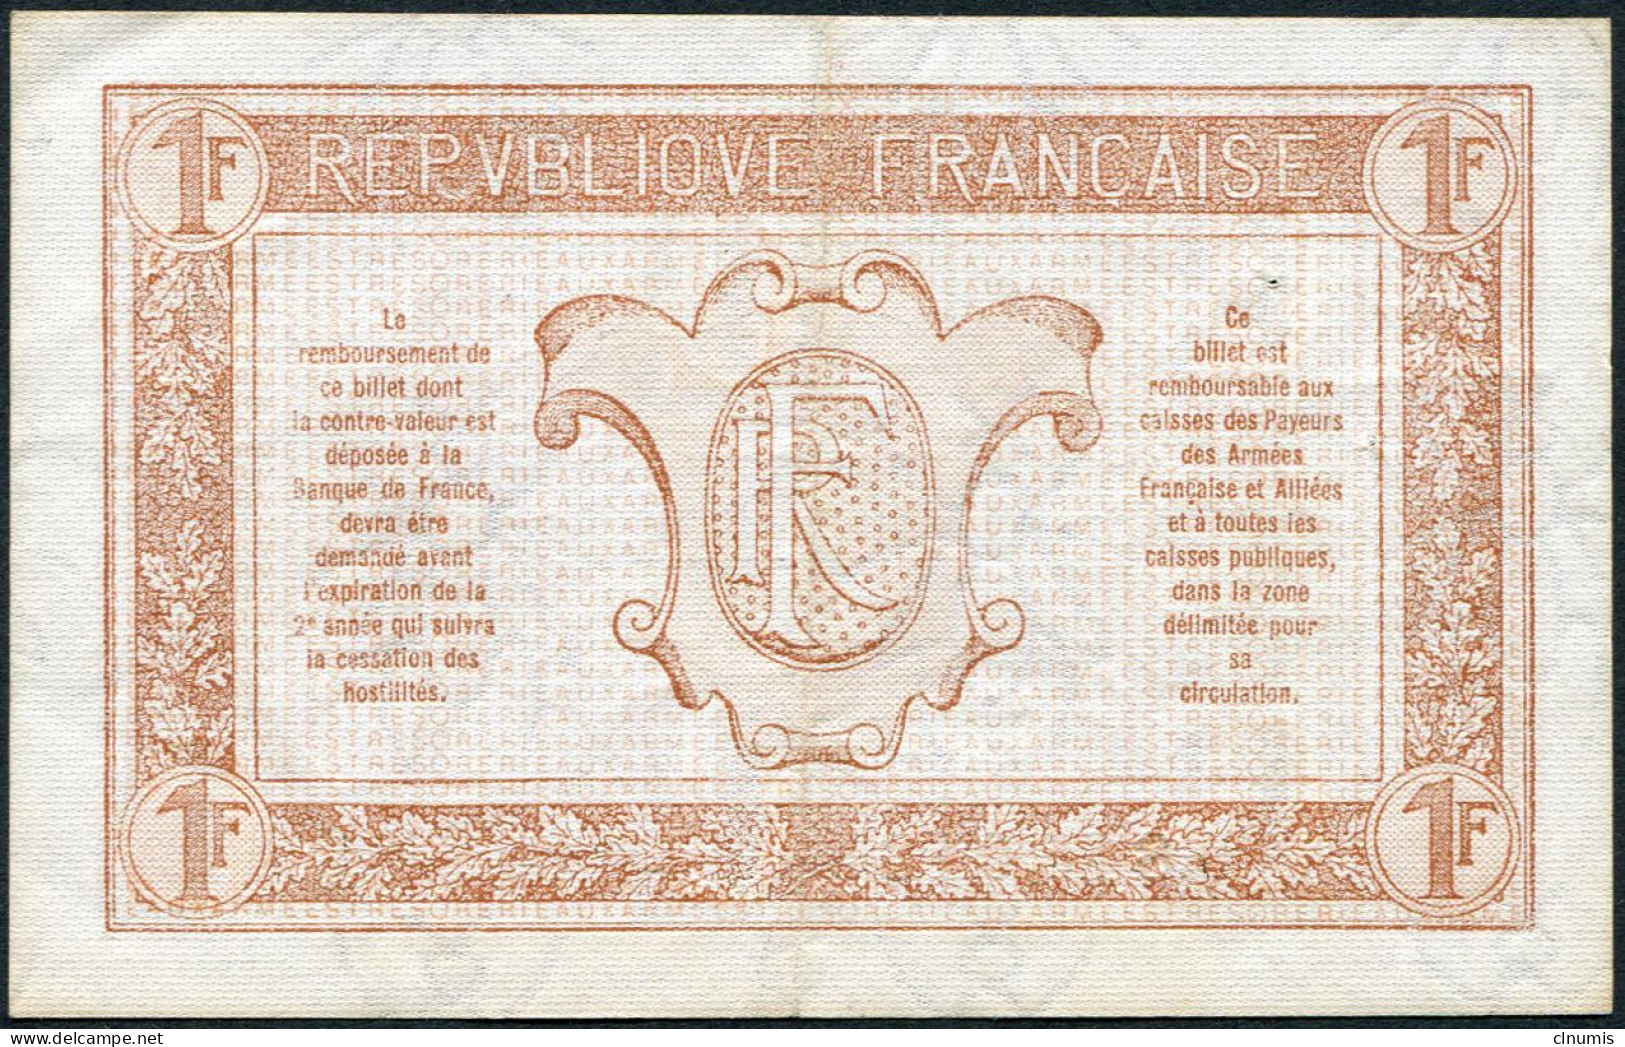 1 Franc Trésorerie Aux Armées 1917, Lettre C, N° 818013 - 1917-1919 Armeekasse